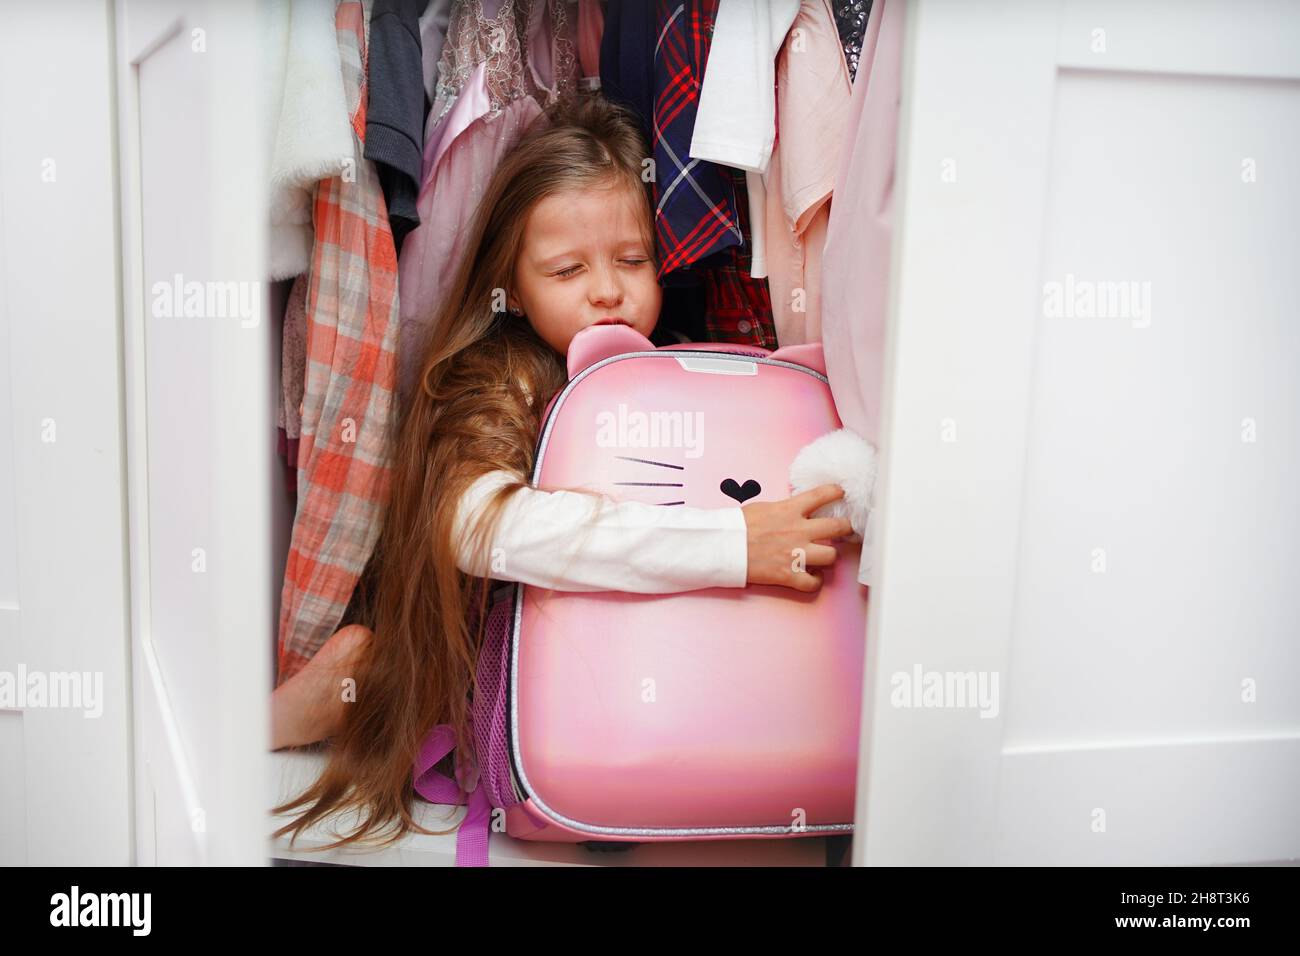 La studentessa si nascose nell'armadio, la ragazza non vuole andare a scuola a causa del bullismo. Foto Stock